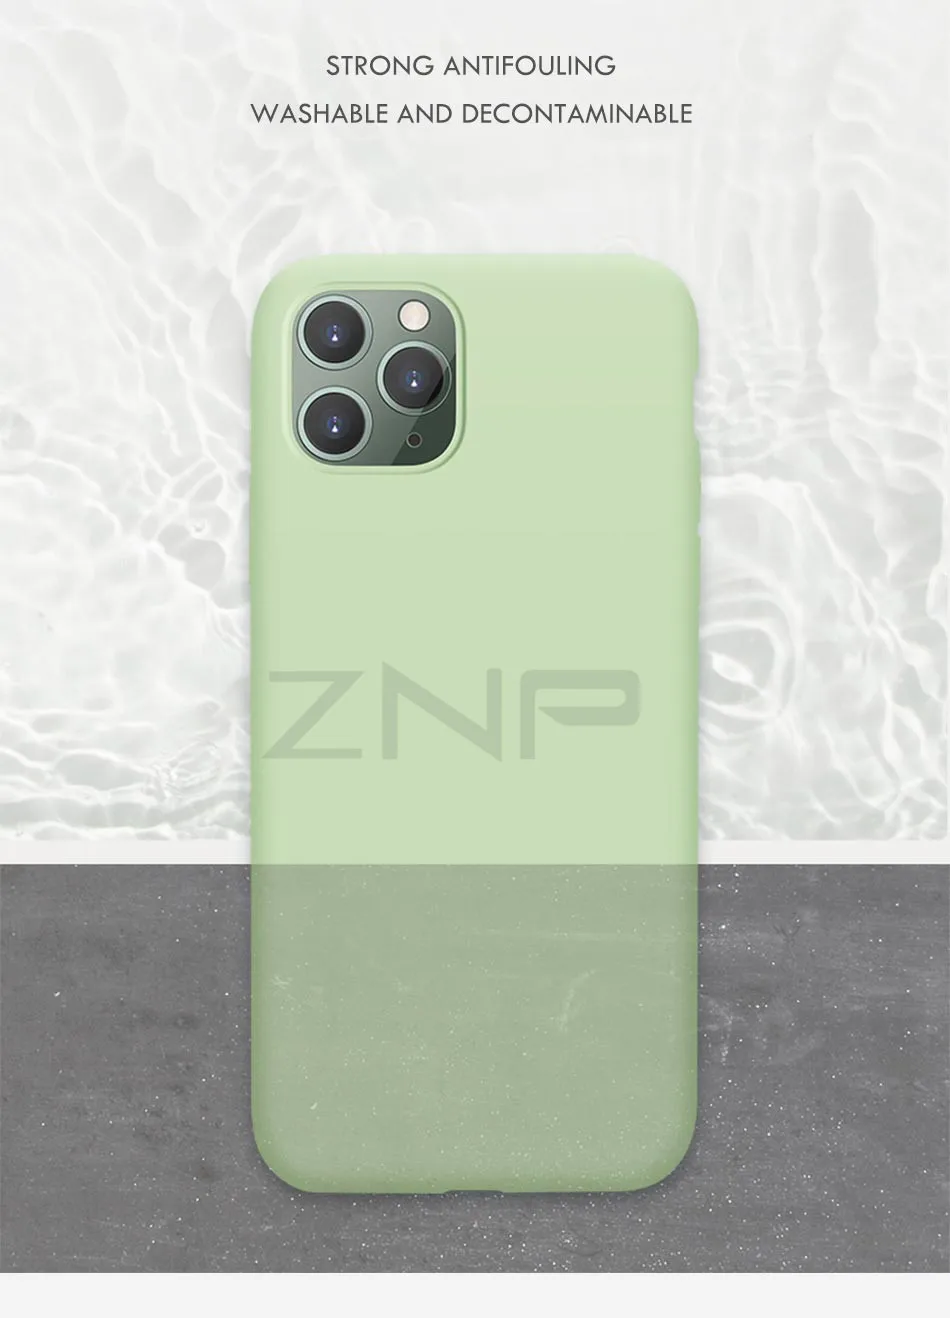 ZNP тонкий жидкий силиконовый чехол для iPhone 11 Pro XS Max X XR карамельный цвет мягкий чехол для iPhone 8 7 6 6s Plus X чехол для телефона Coque